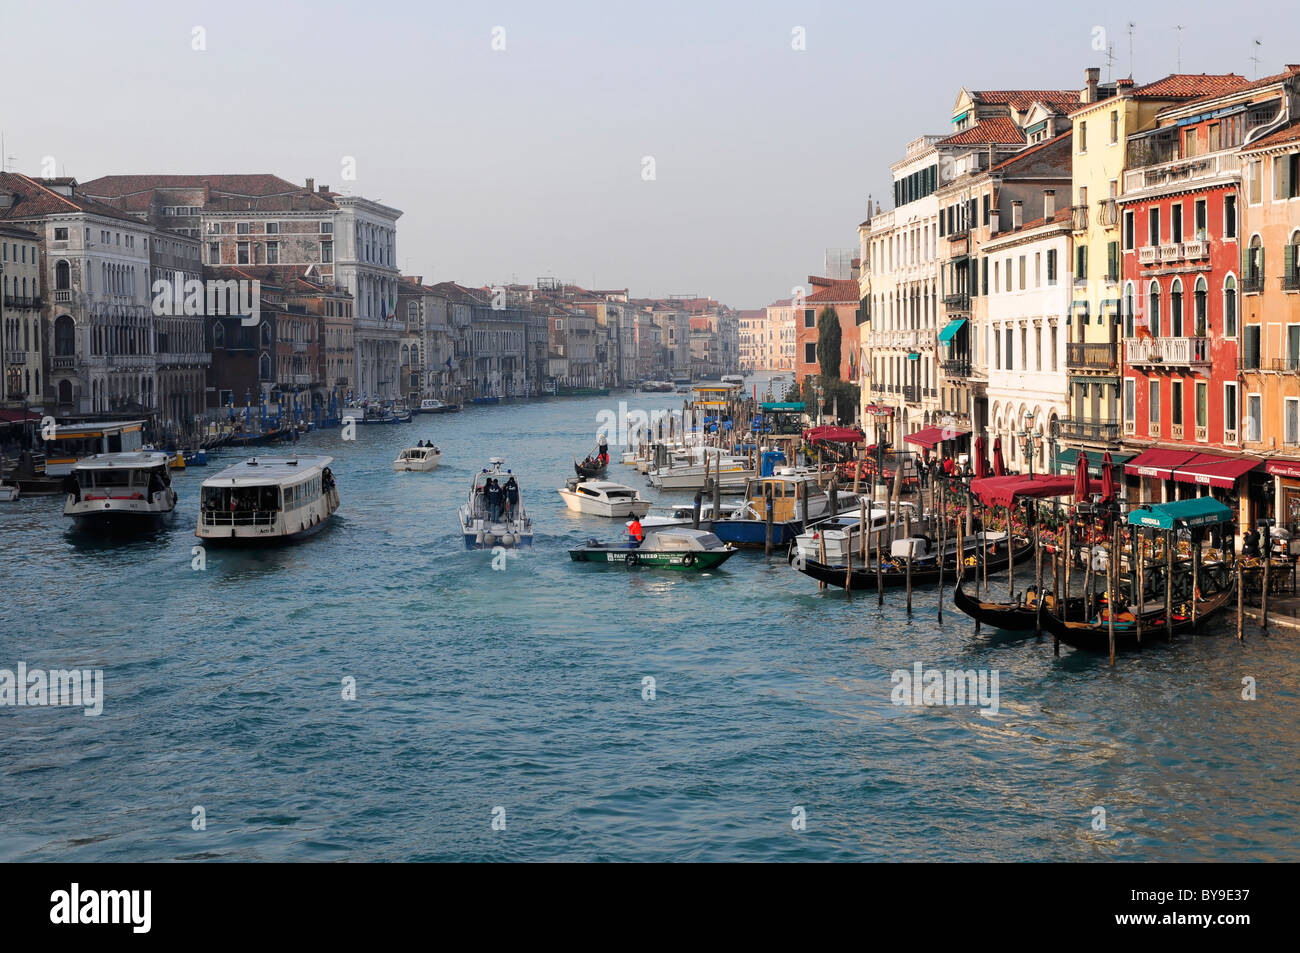 Boats, Grand Canal, Venice, Veneto region, Italy, Europe Stock Photo